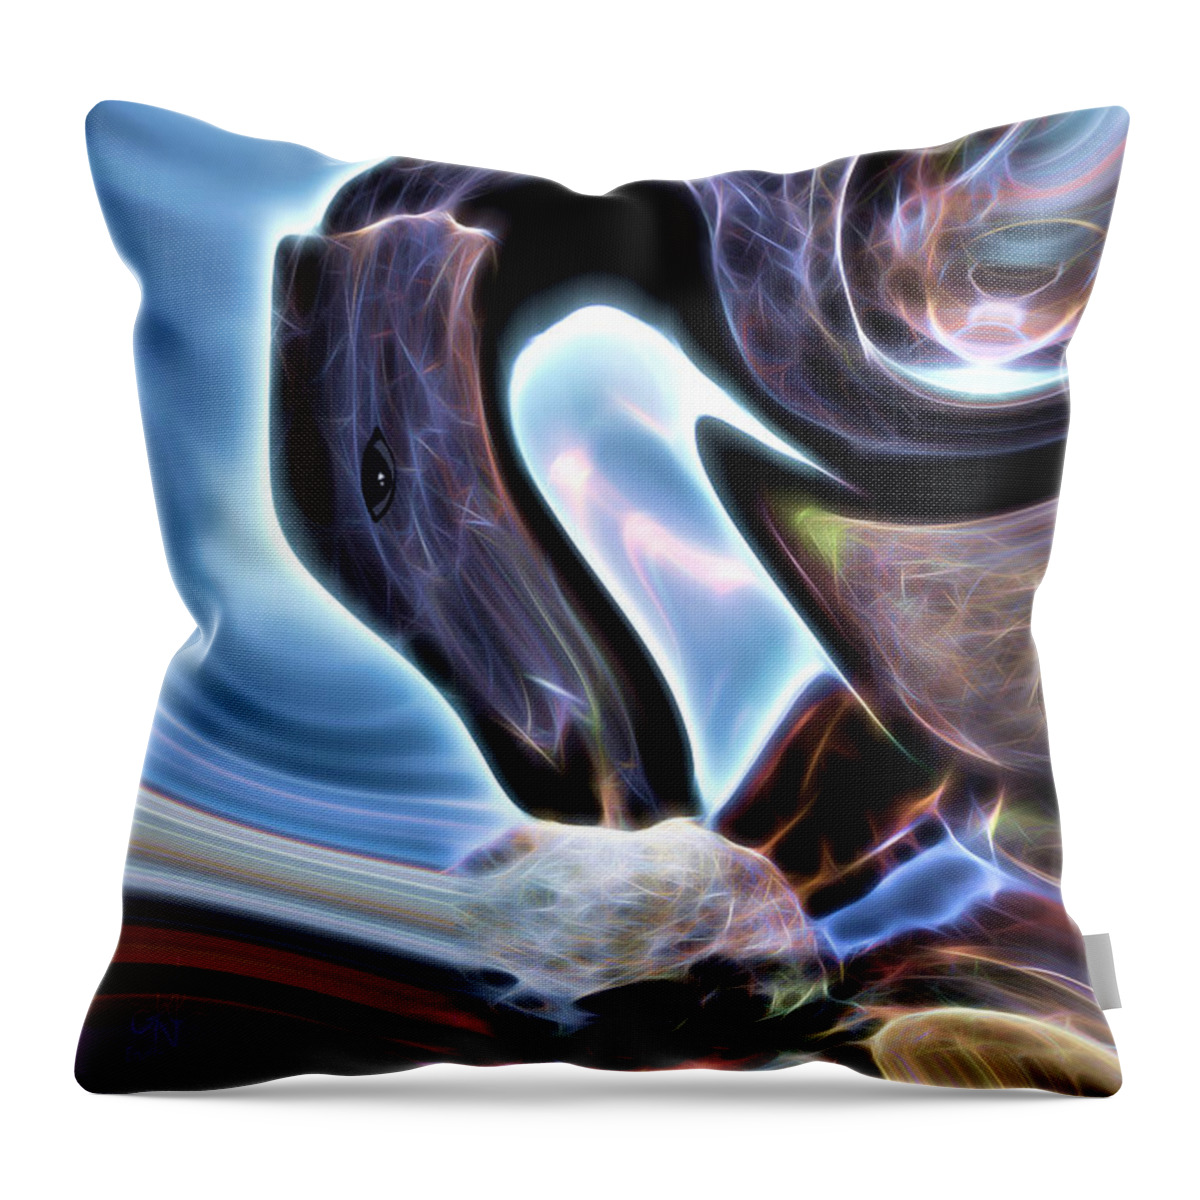 Alien Throw Pillow featuring the digital art Tokhai by Pennie McCracken